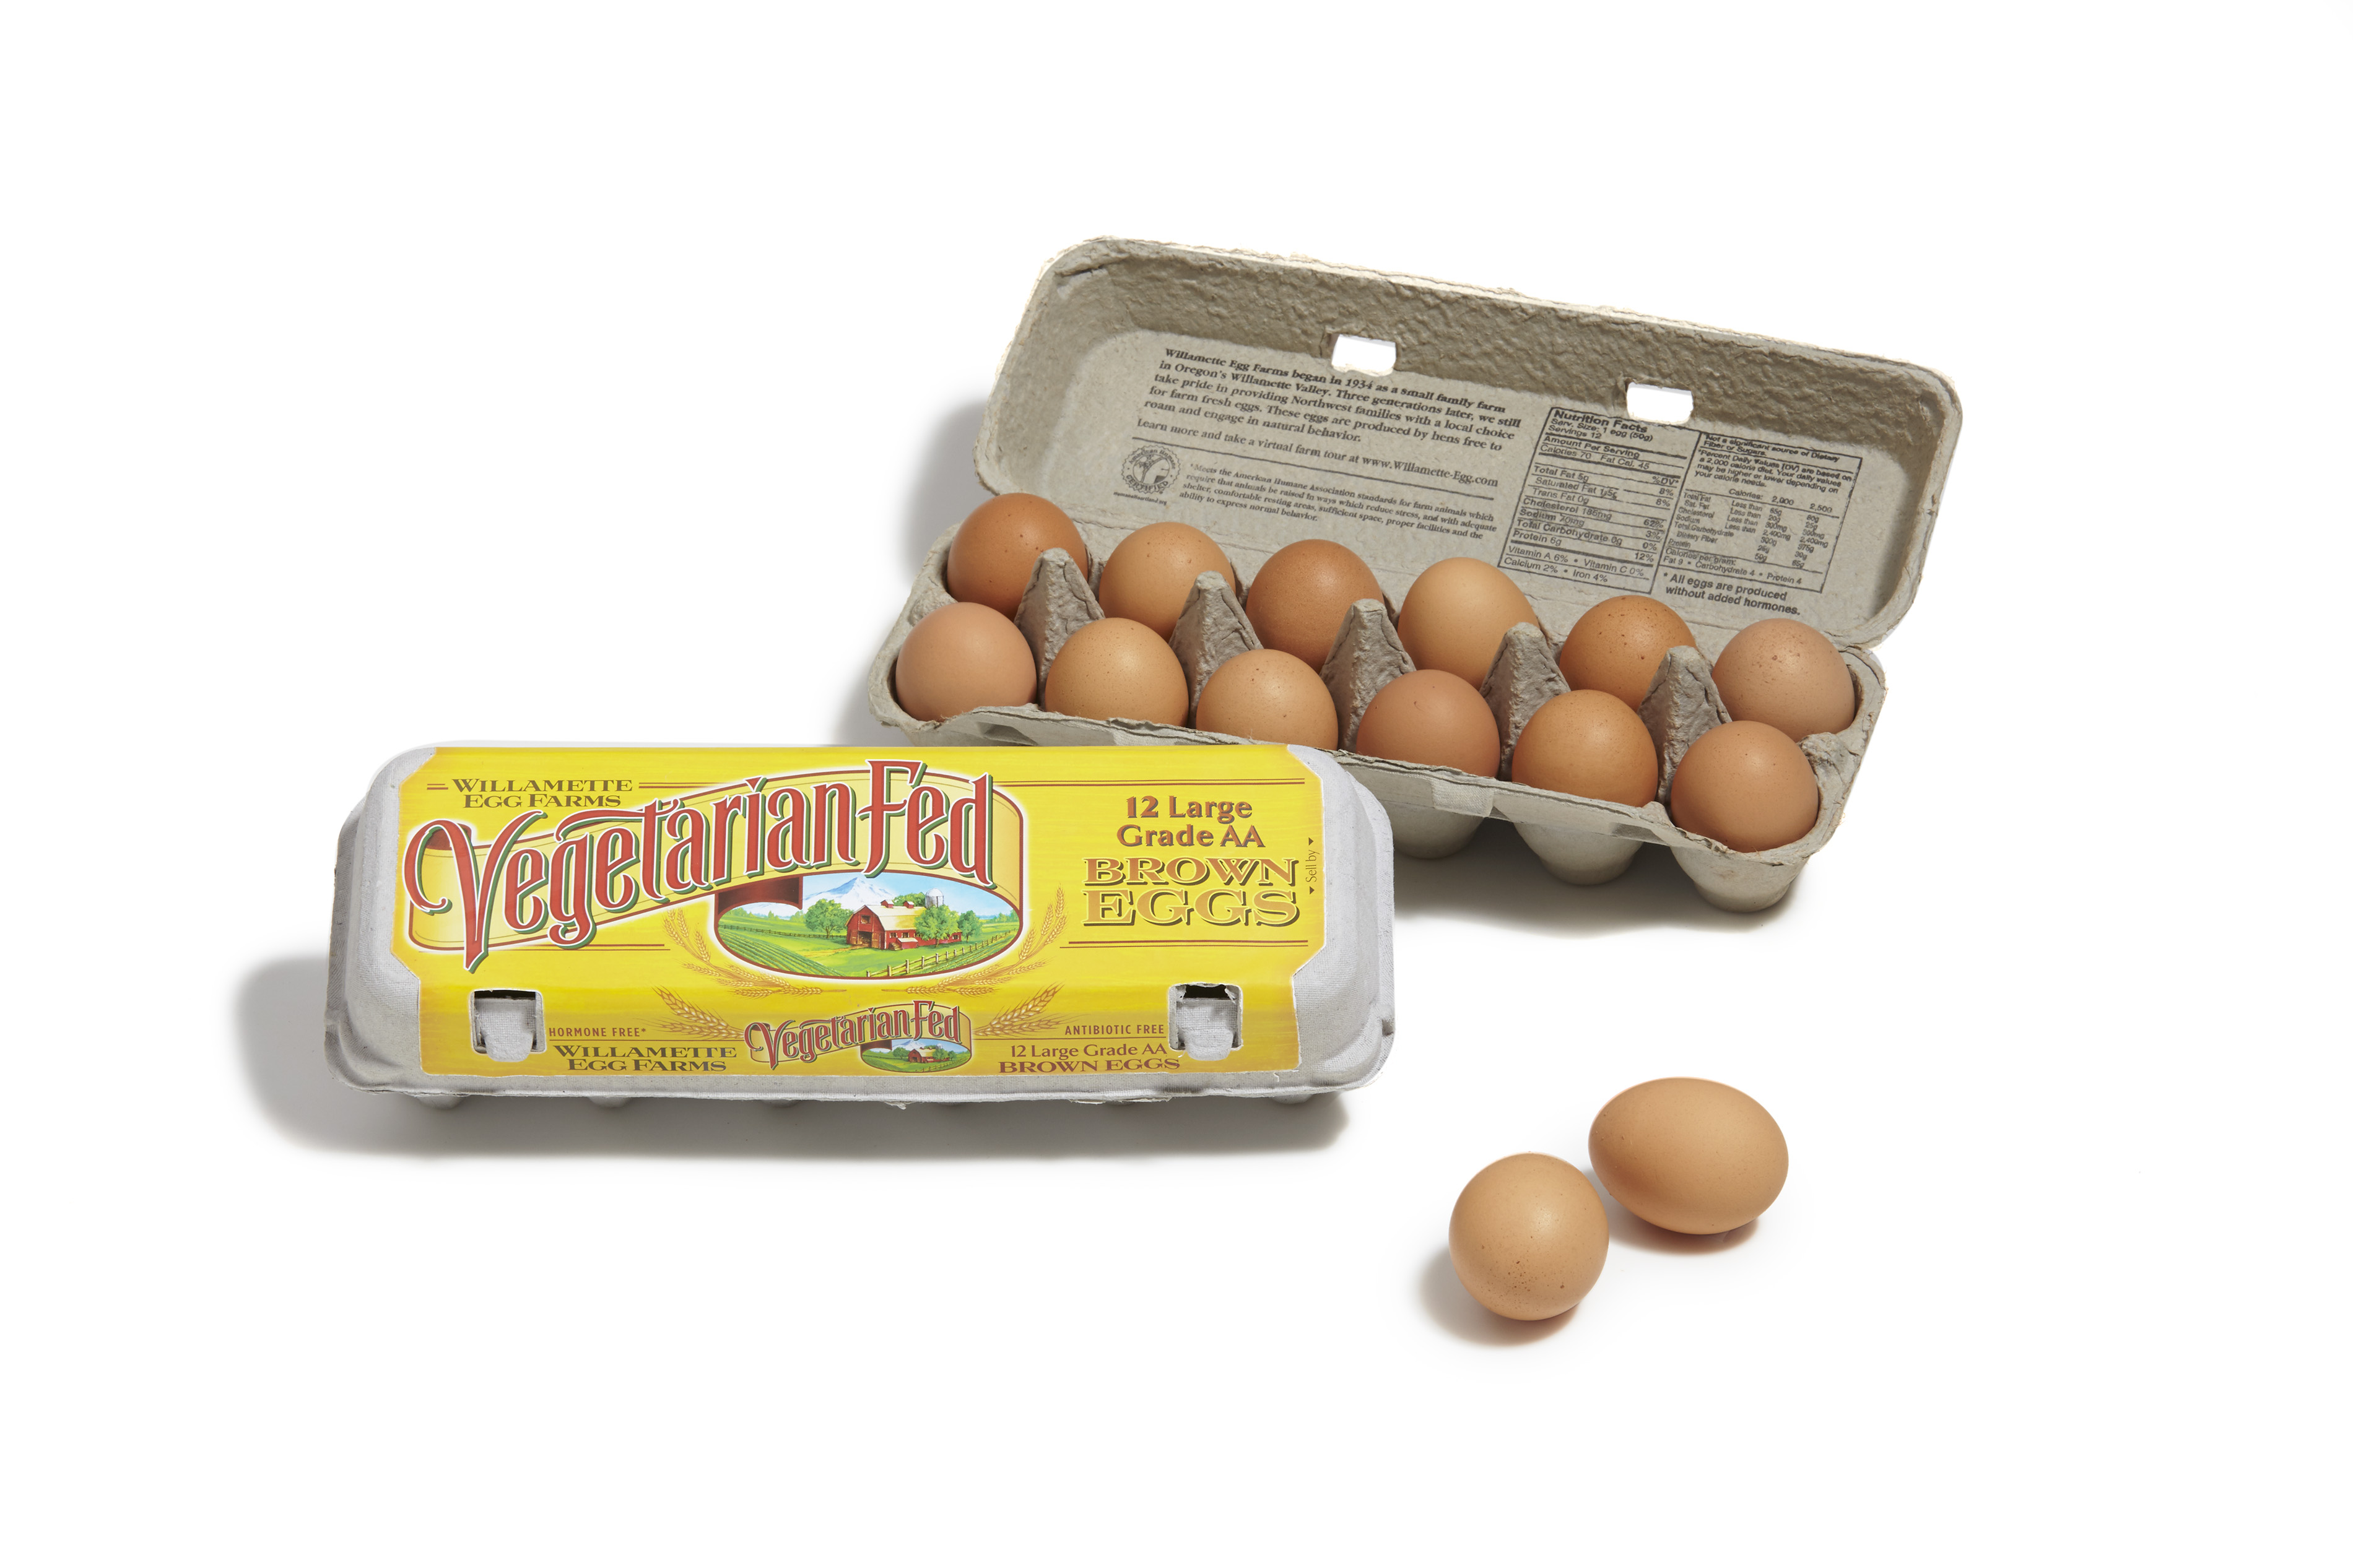 Vegetarian Fed Brown Eggs